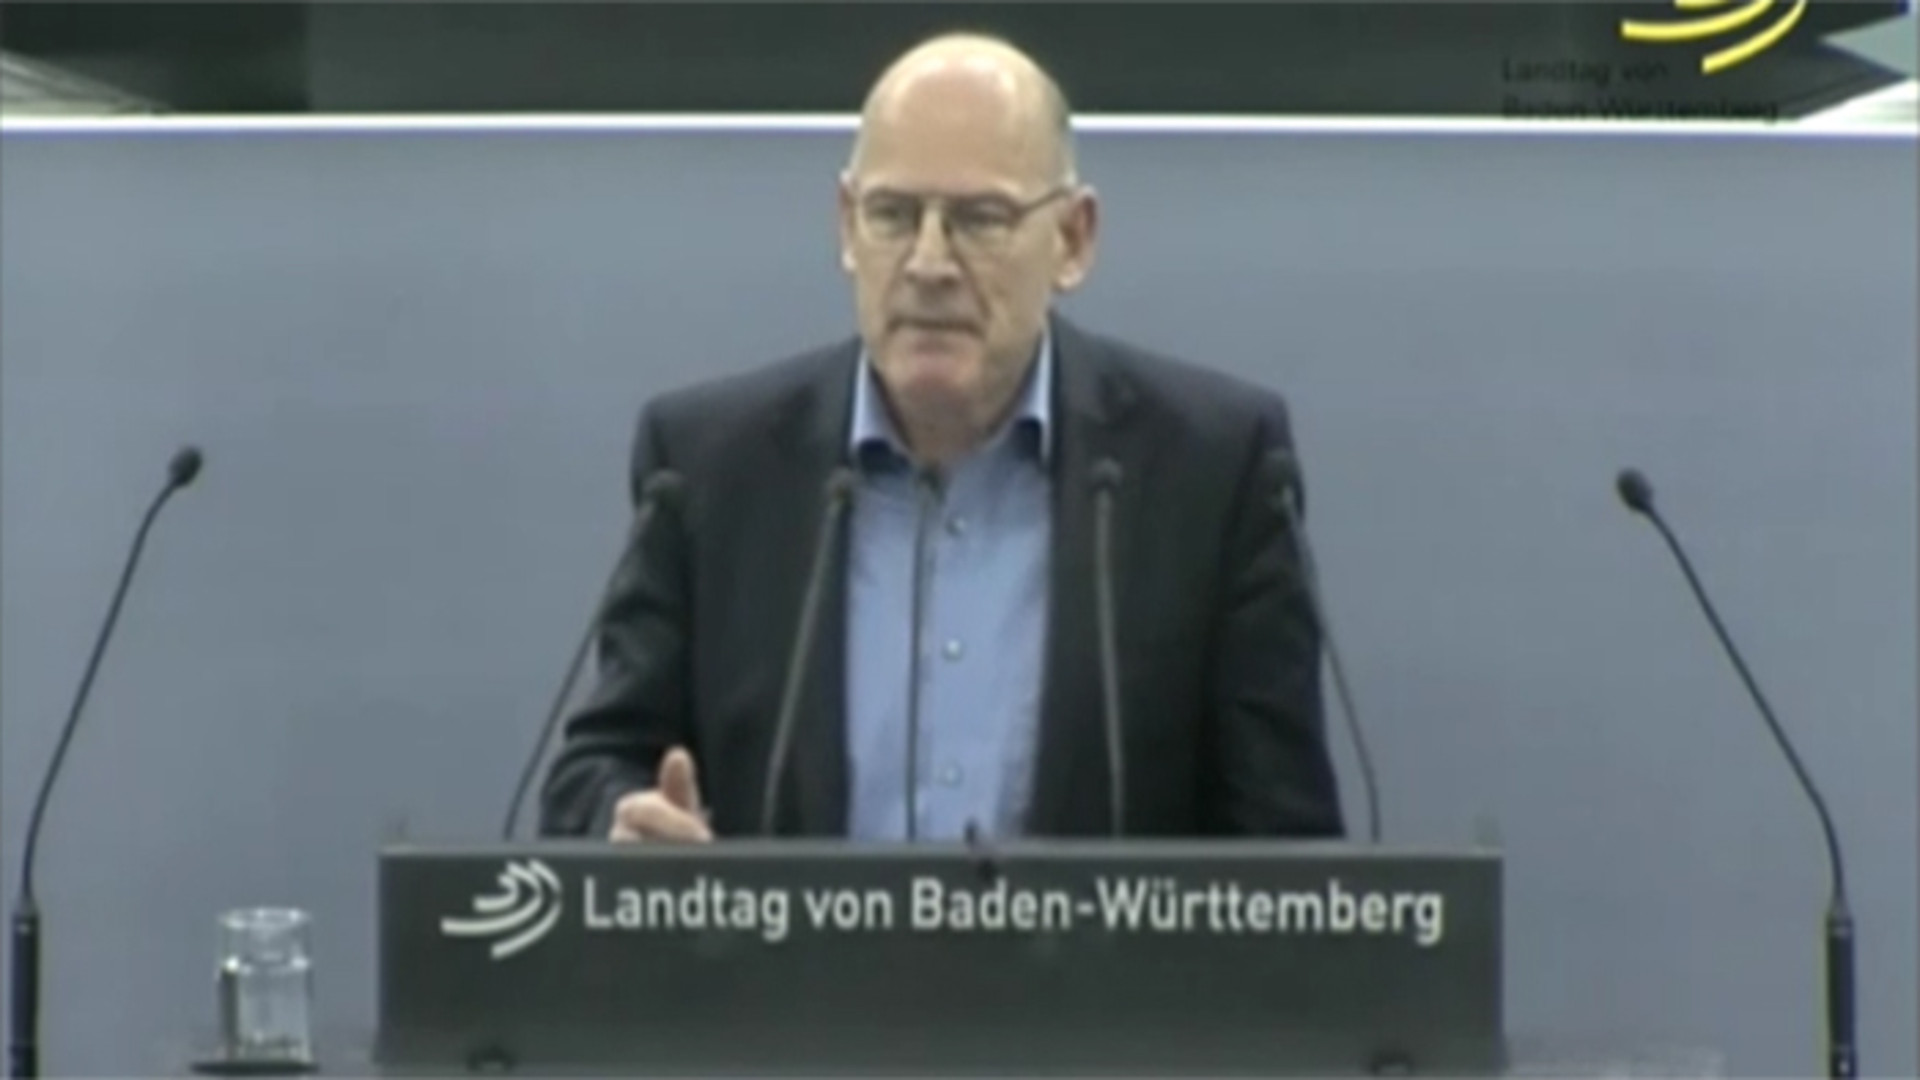 Minister Hermann bei der Haushaltsdebatte am 11. Dezember 2014 im Landtag